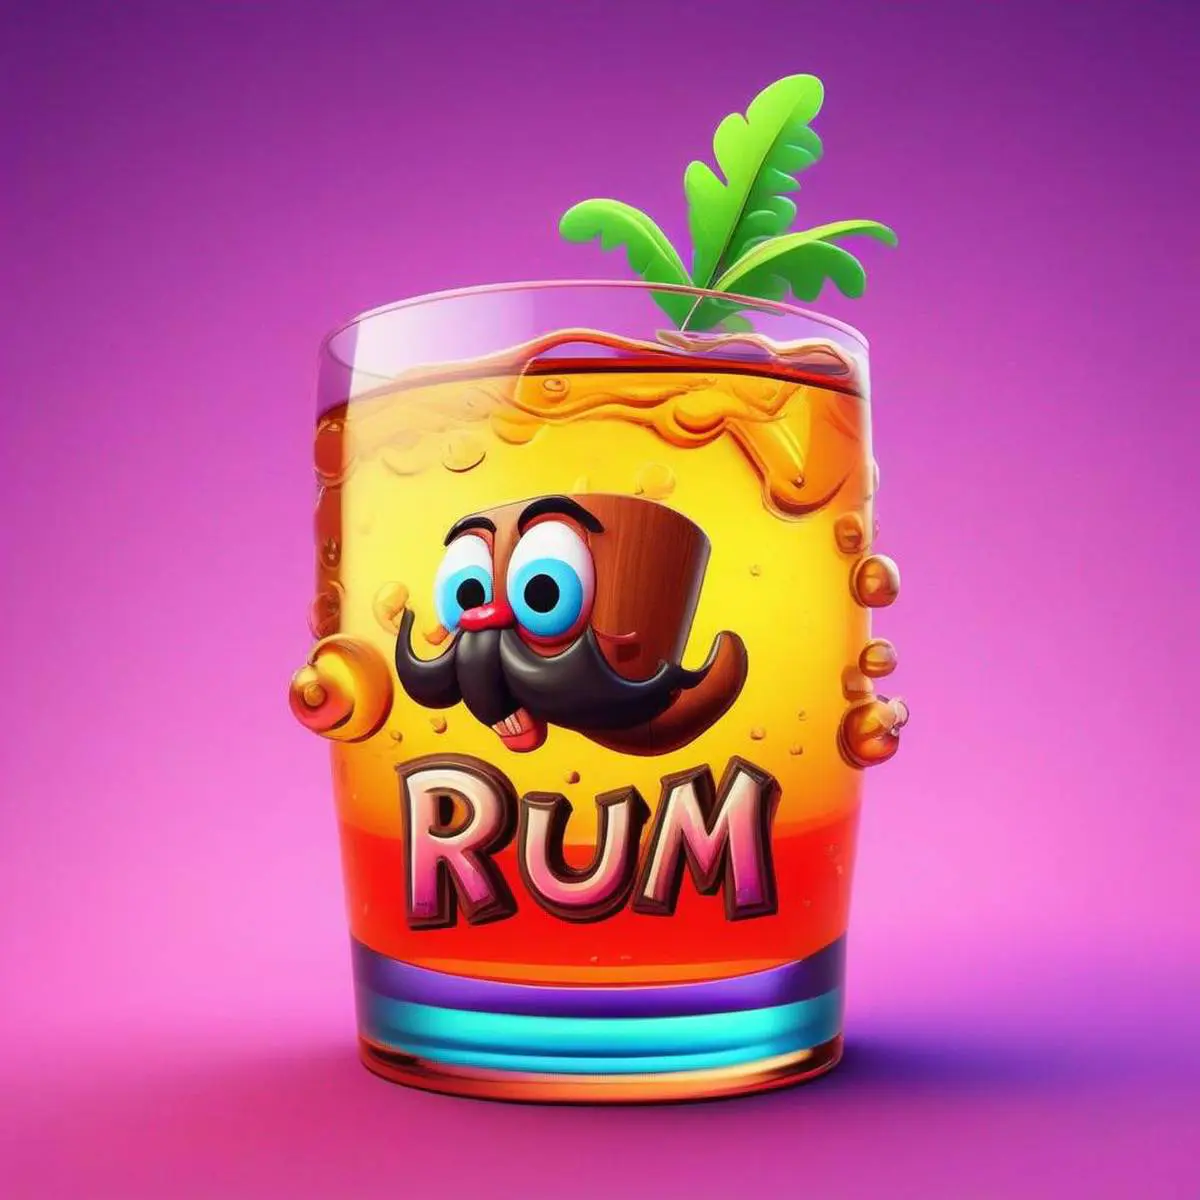 Rum puns